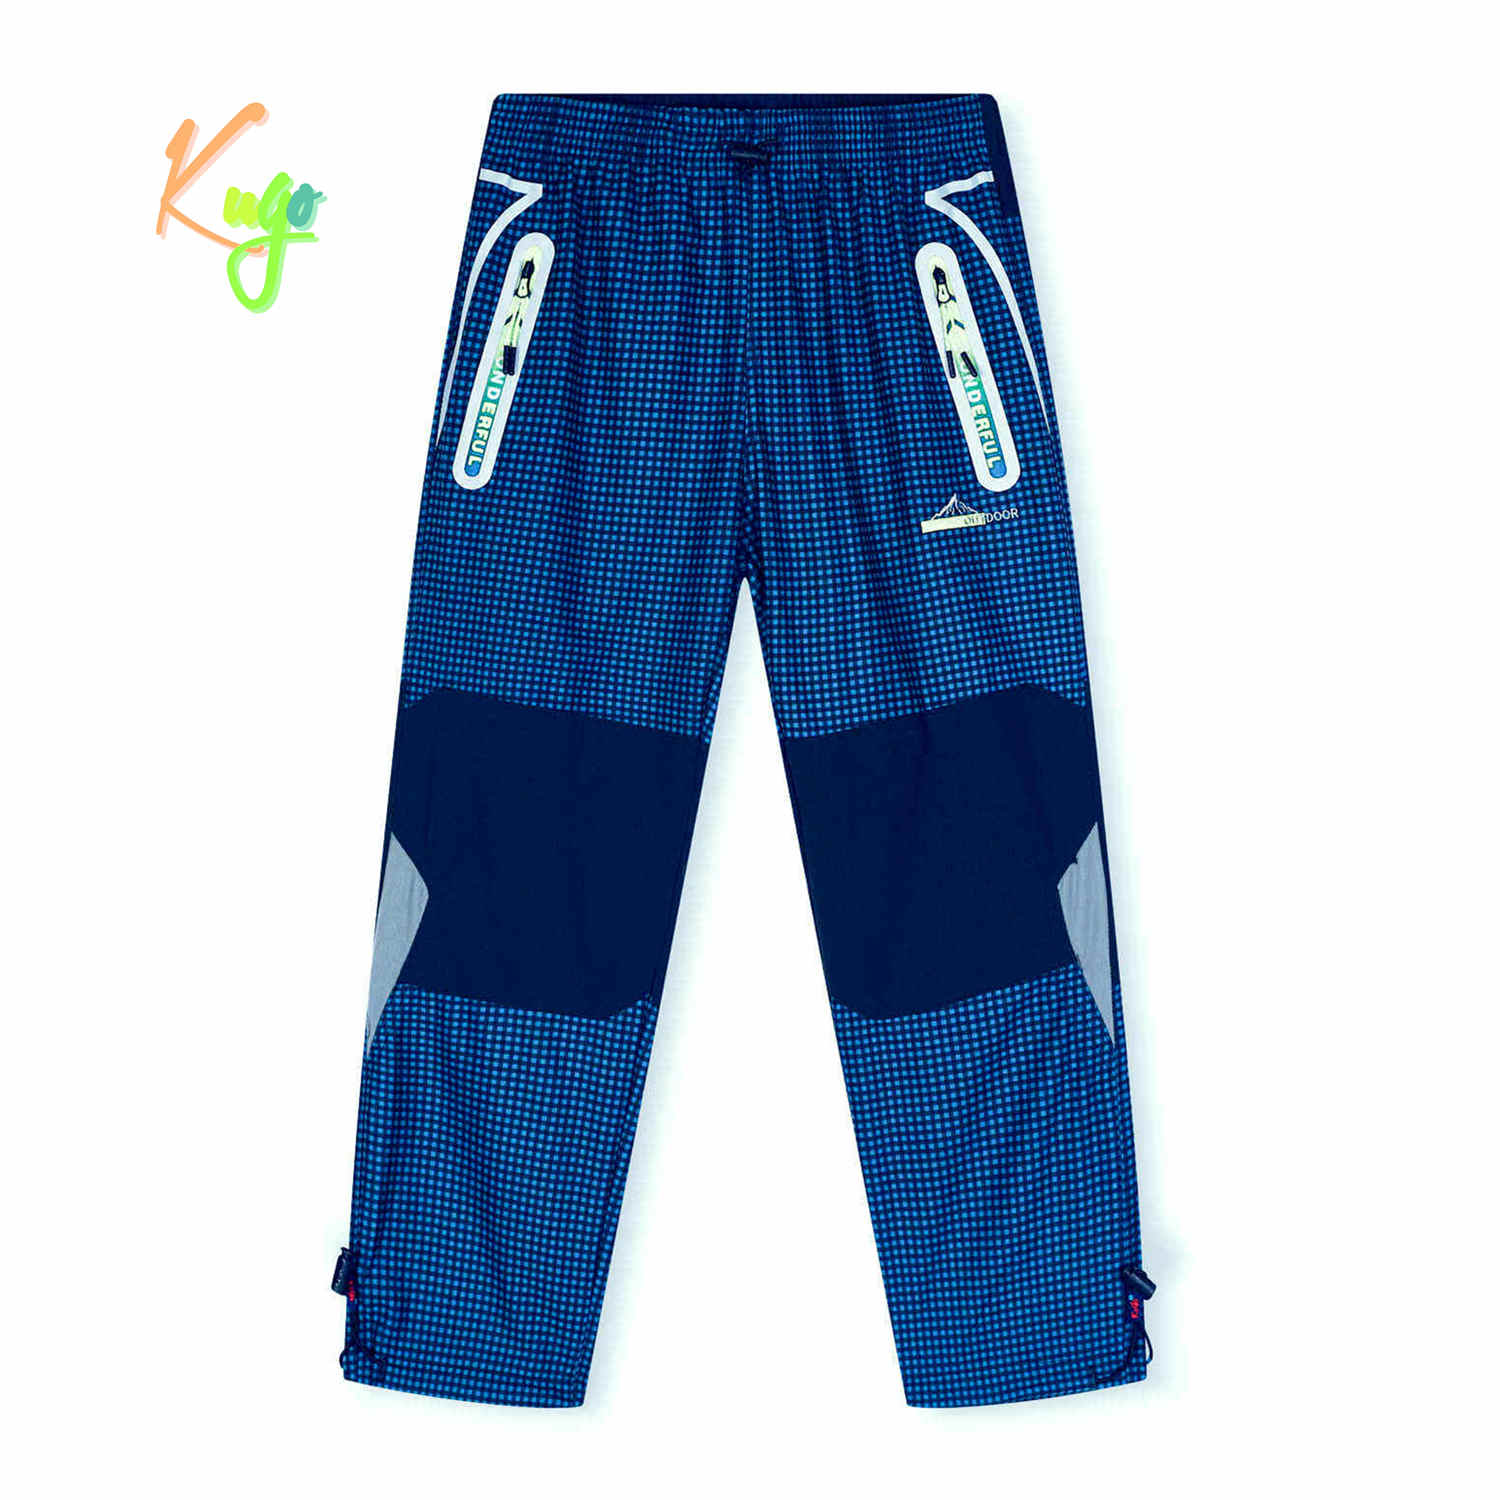 Chlapecké outdoorové kalhoty - KUGO G9655, modrá / zelené zipy Barva: Modrá, Velikost: 122